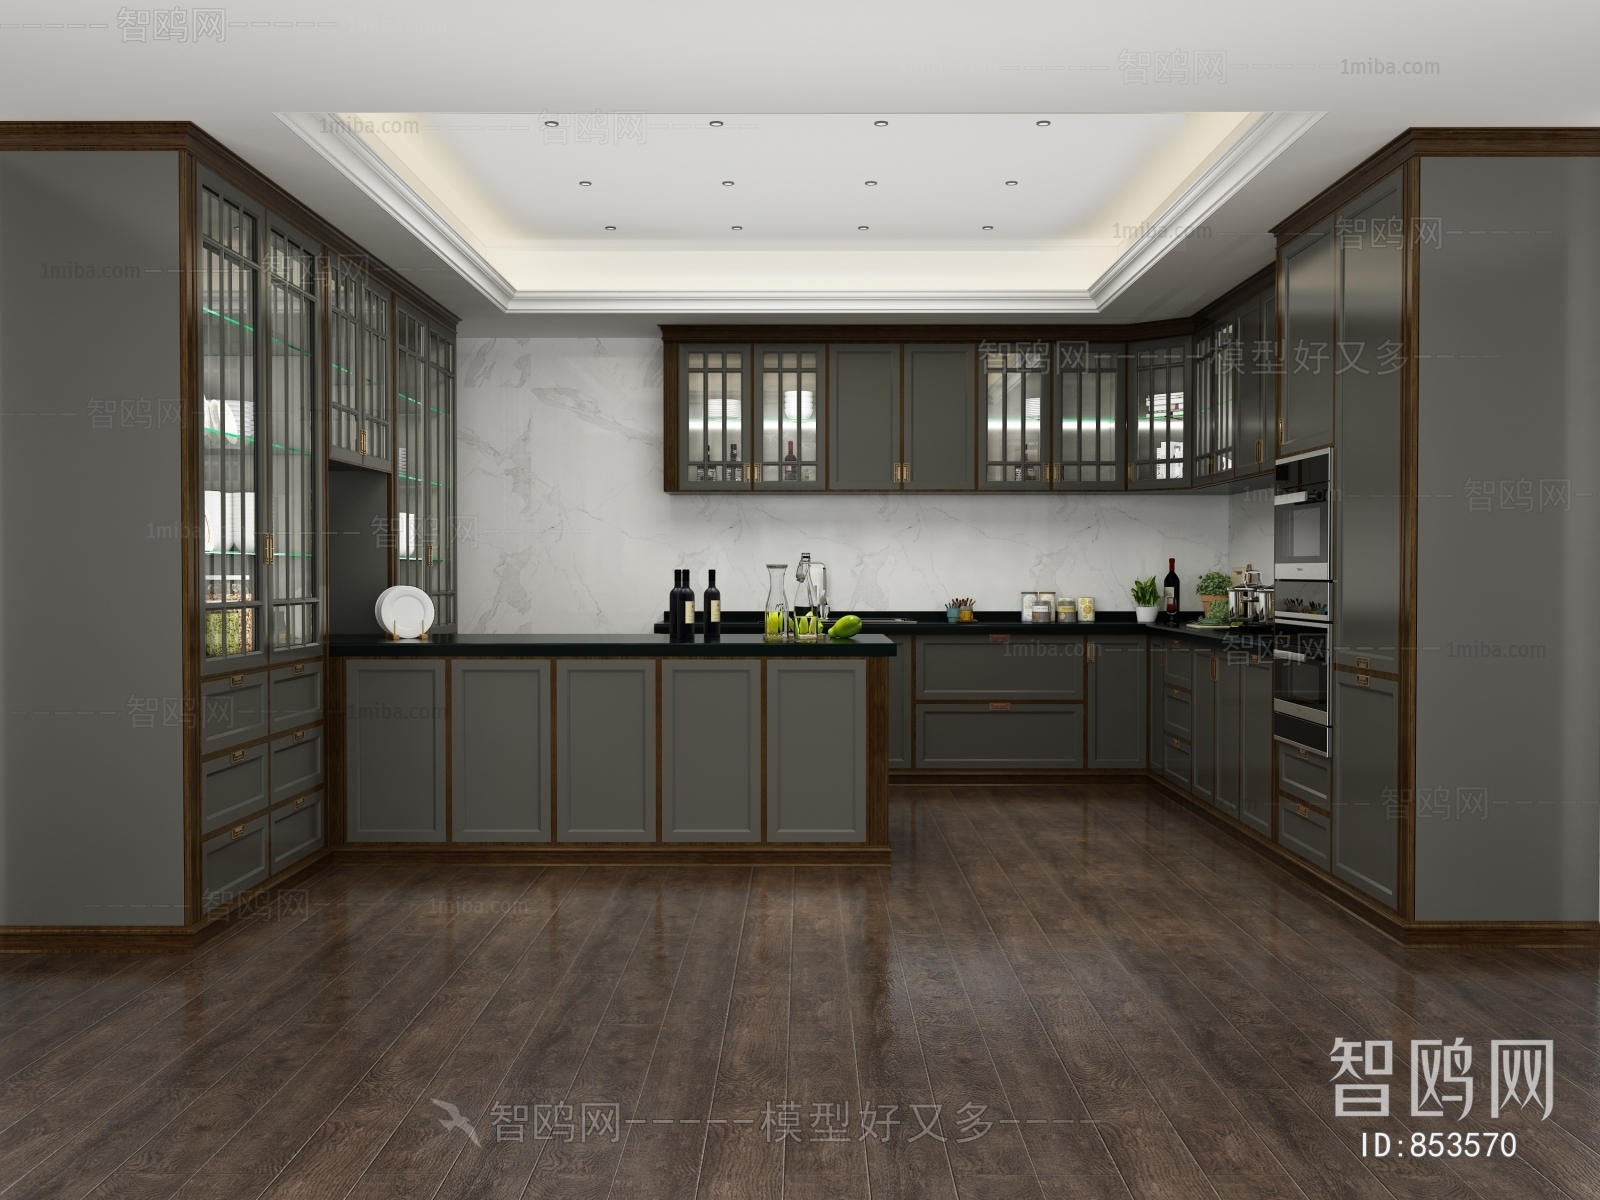 中式厨房厨柜